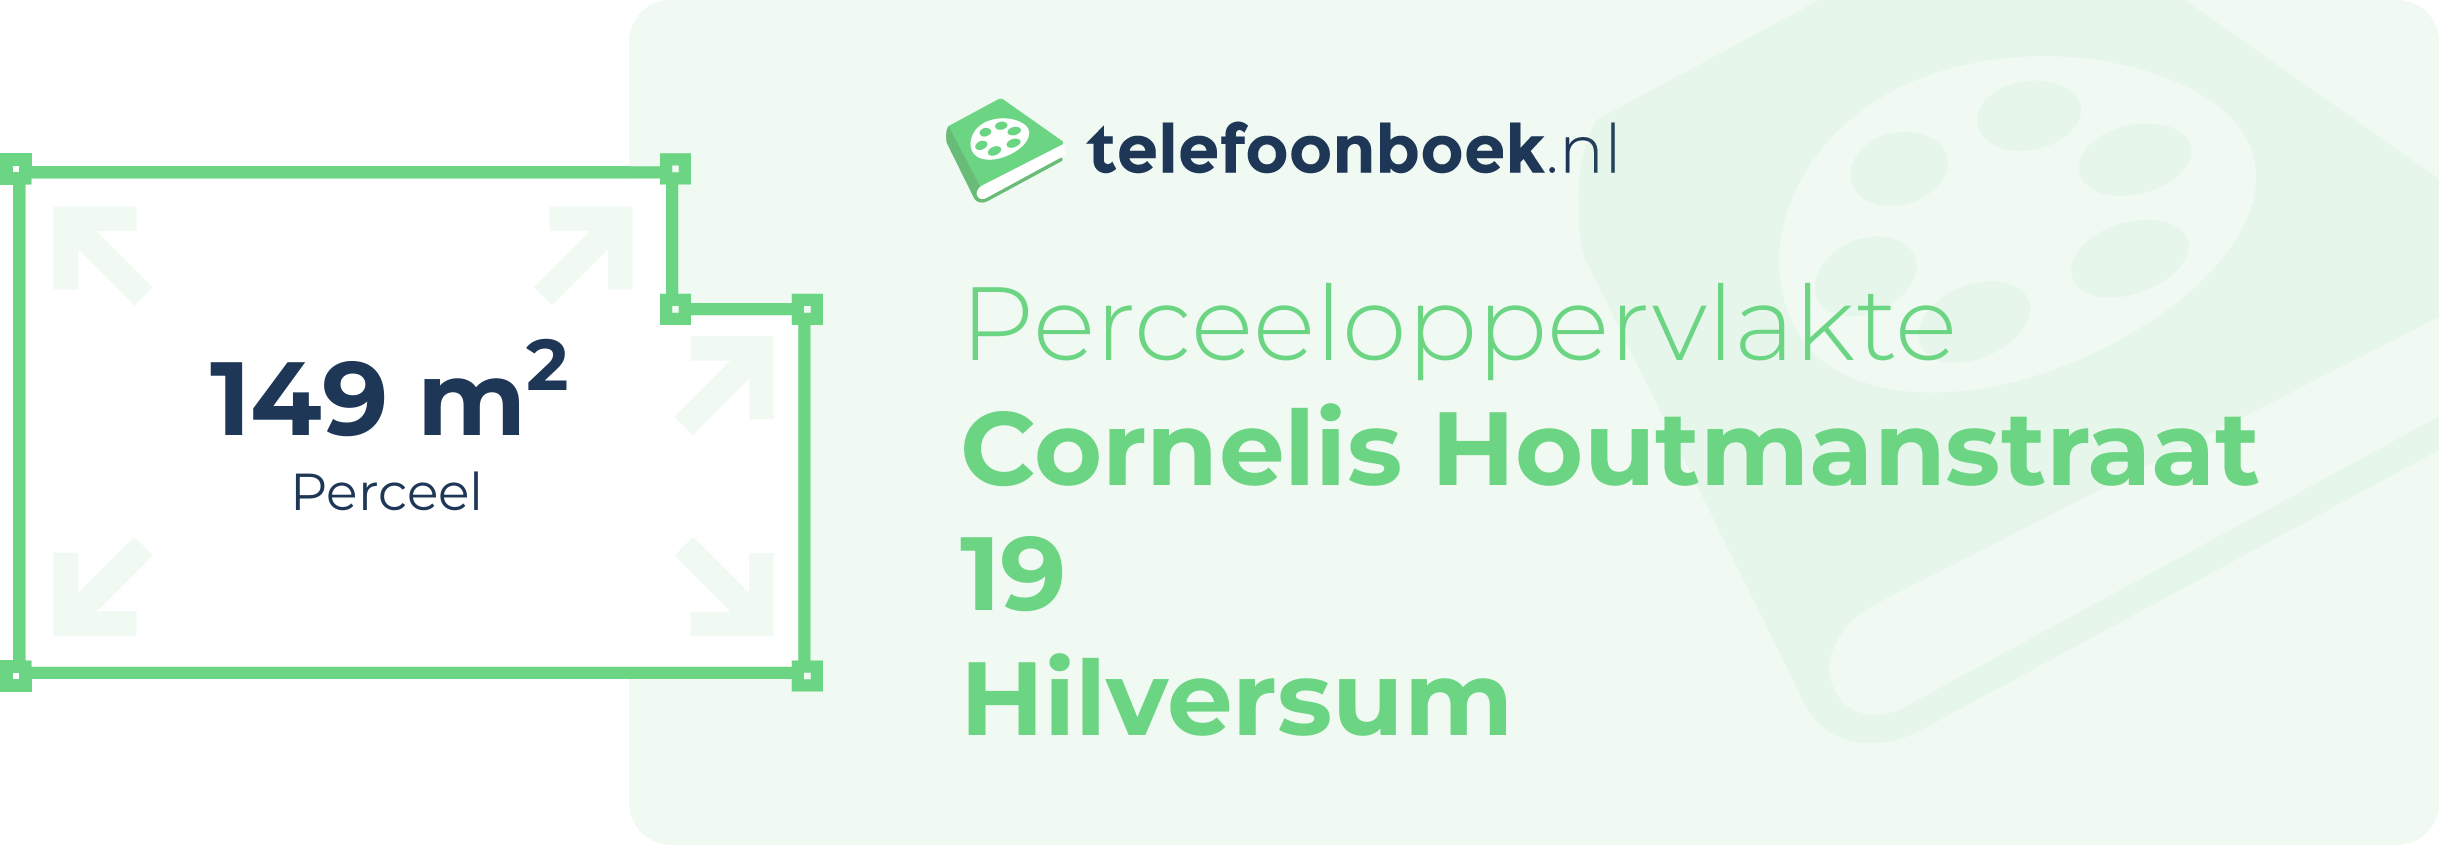 Perceeloppervlakte Cornelis Houtmanstraat 19 Hilversum